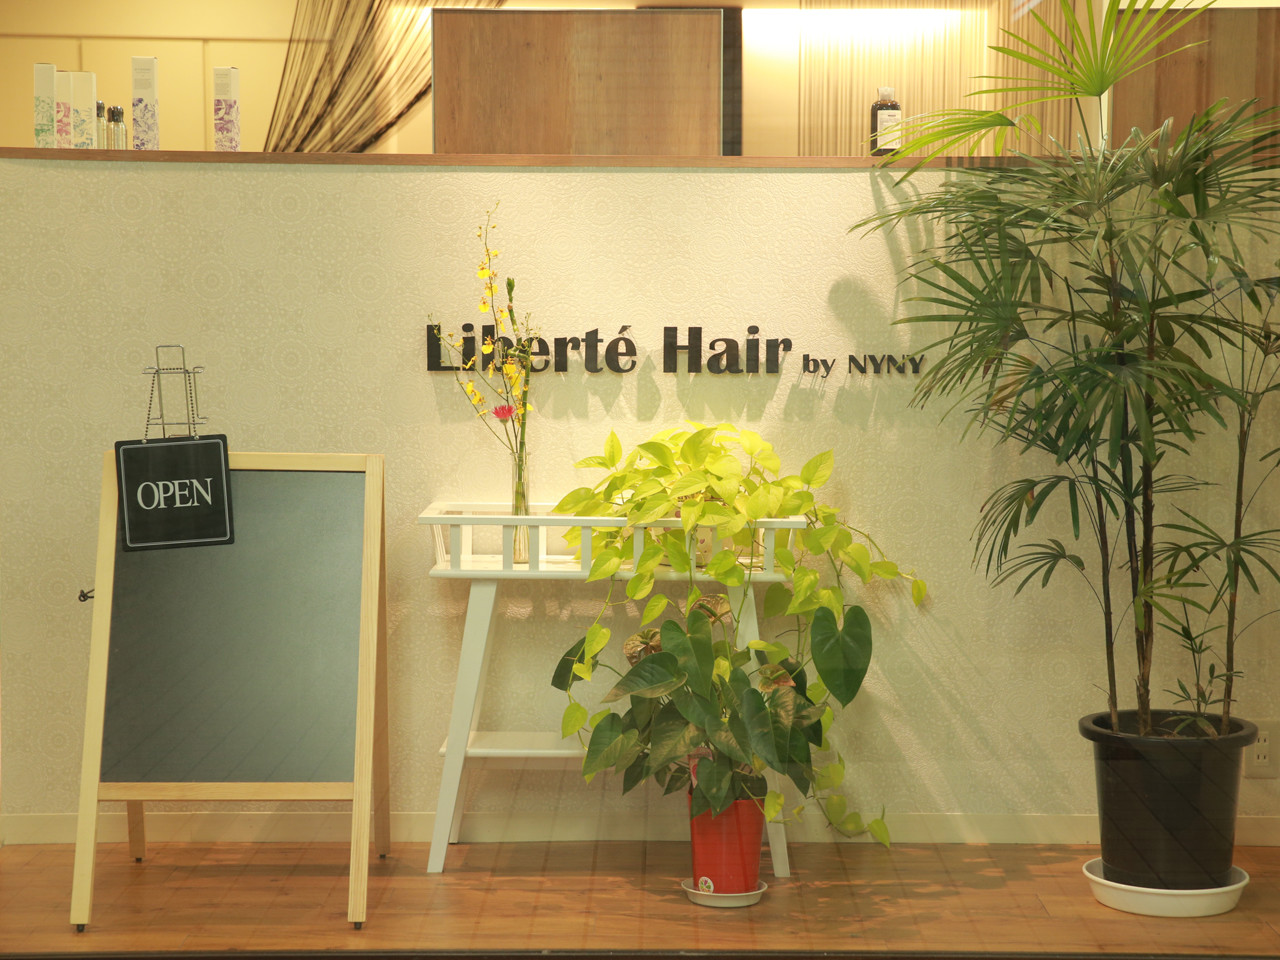 Liberte'Hair by NYNYのアイキャッチ画像